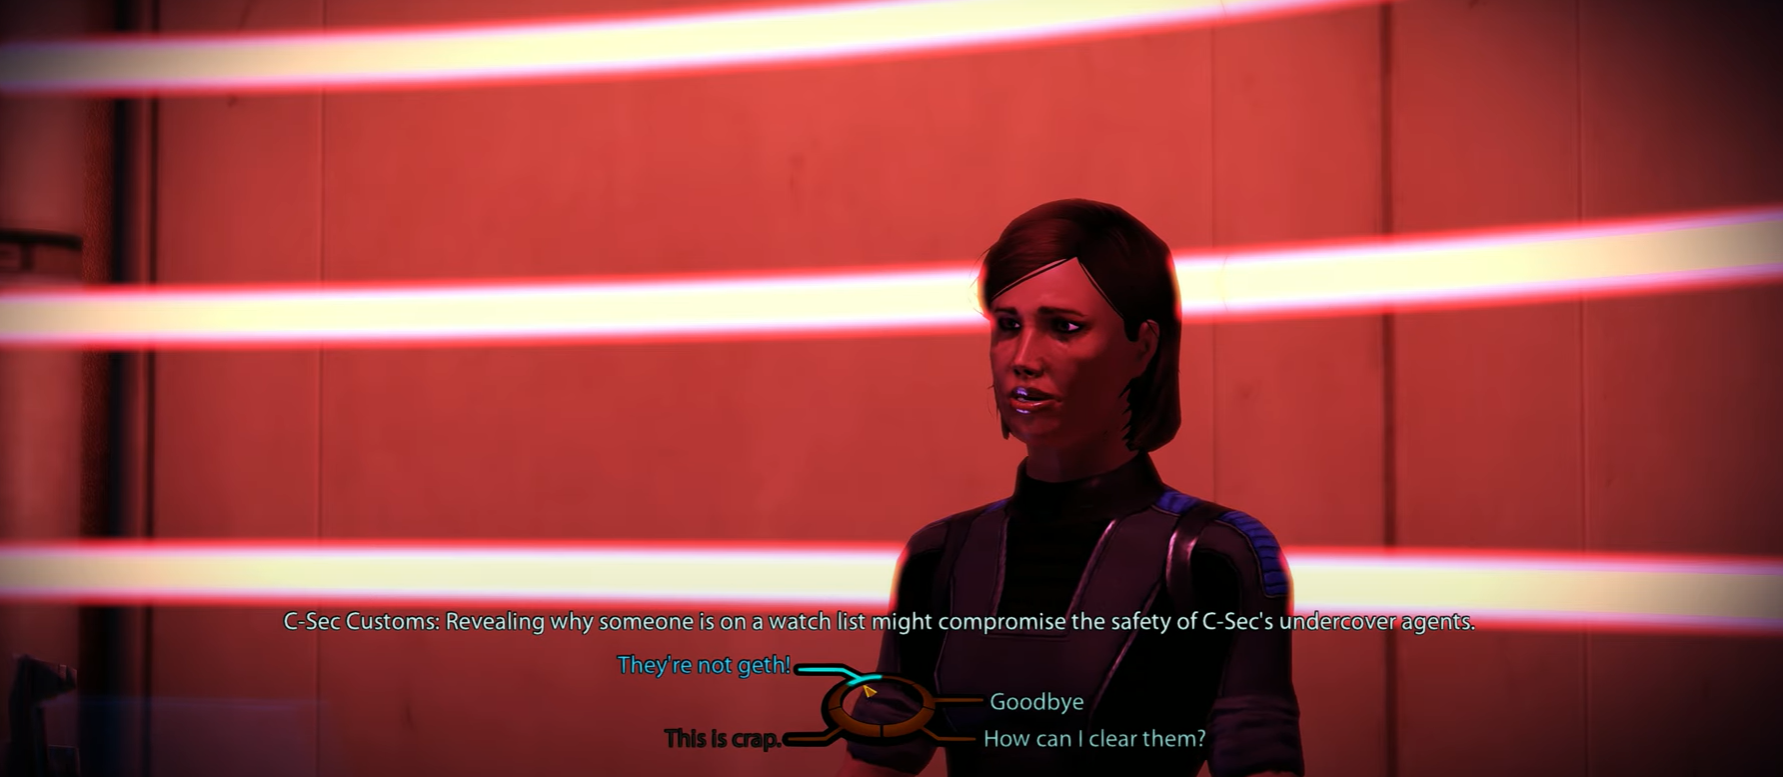 Mass Effect C Sec Customs officer